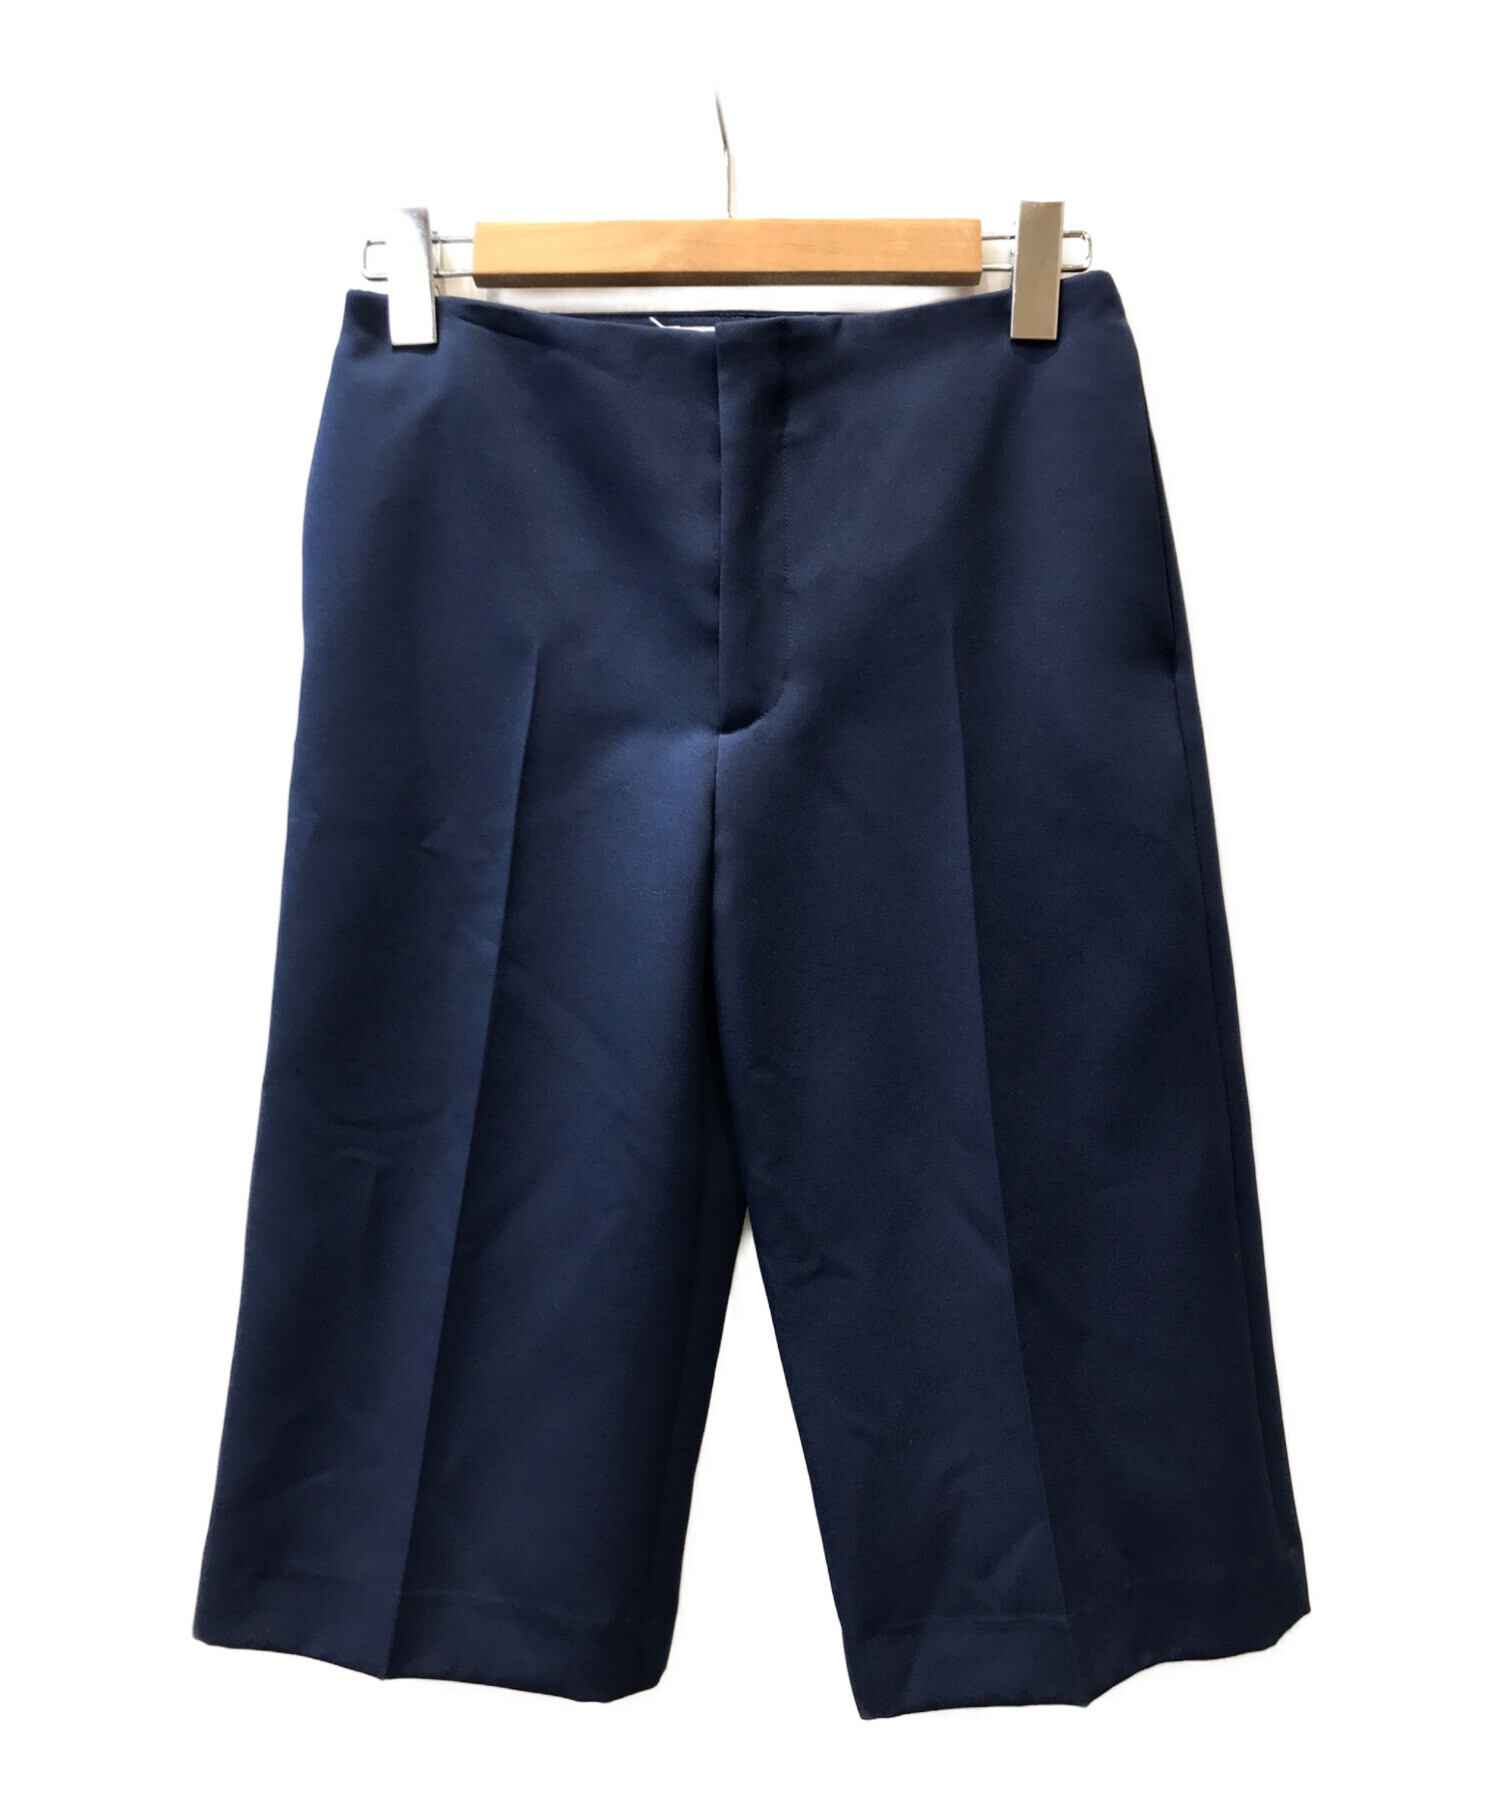 MM6 Maison Margiela (エムエムシックス メゾンマルジェラ) Slim Fit Shorts /ハーフパンツ ショーツ ネイビー  サイズ:38 未使用品